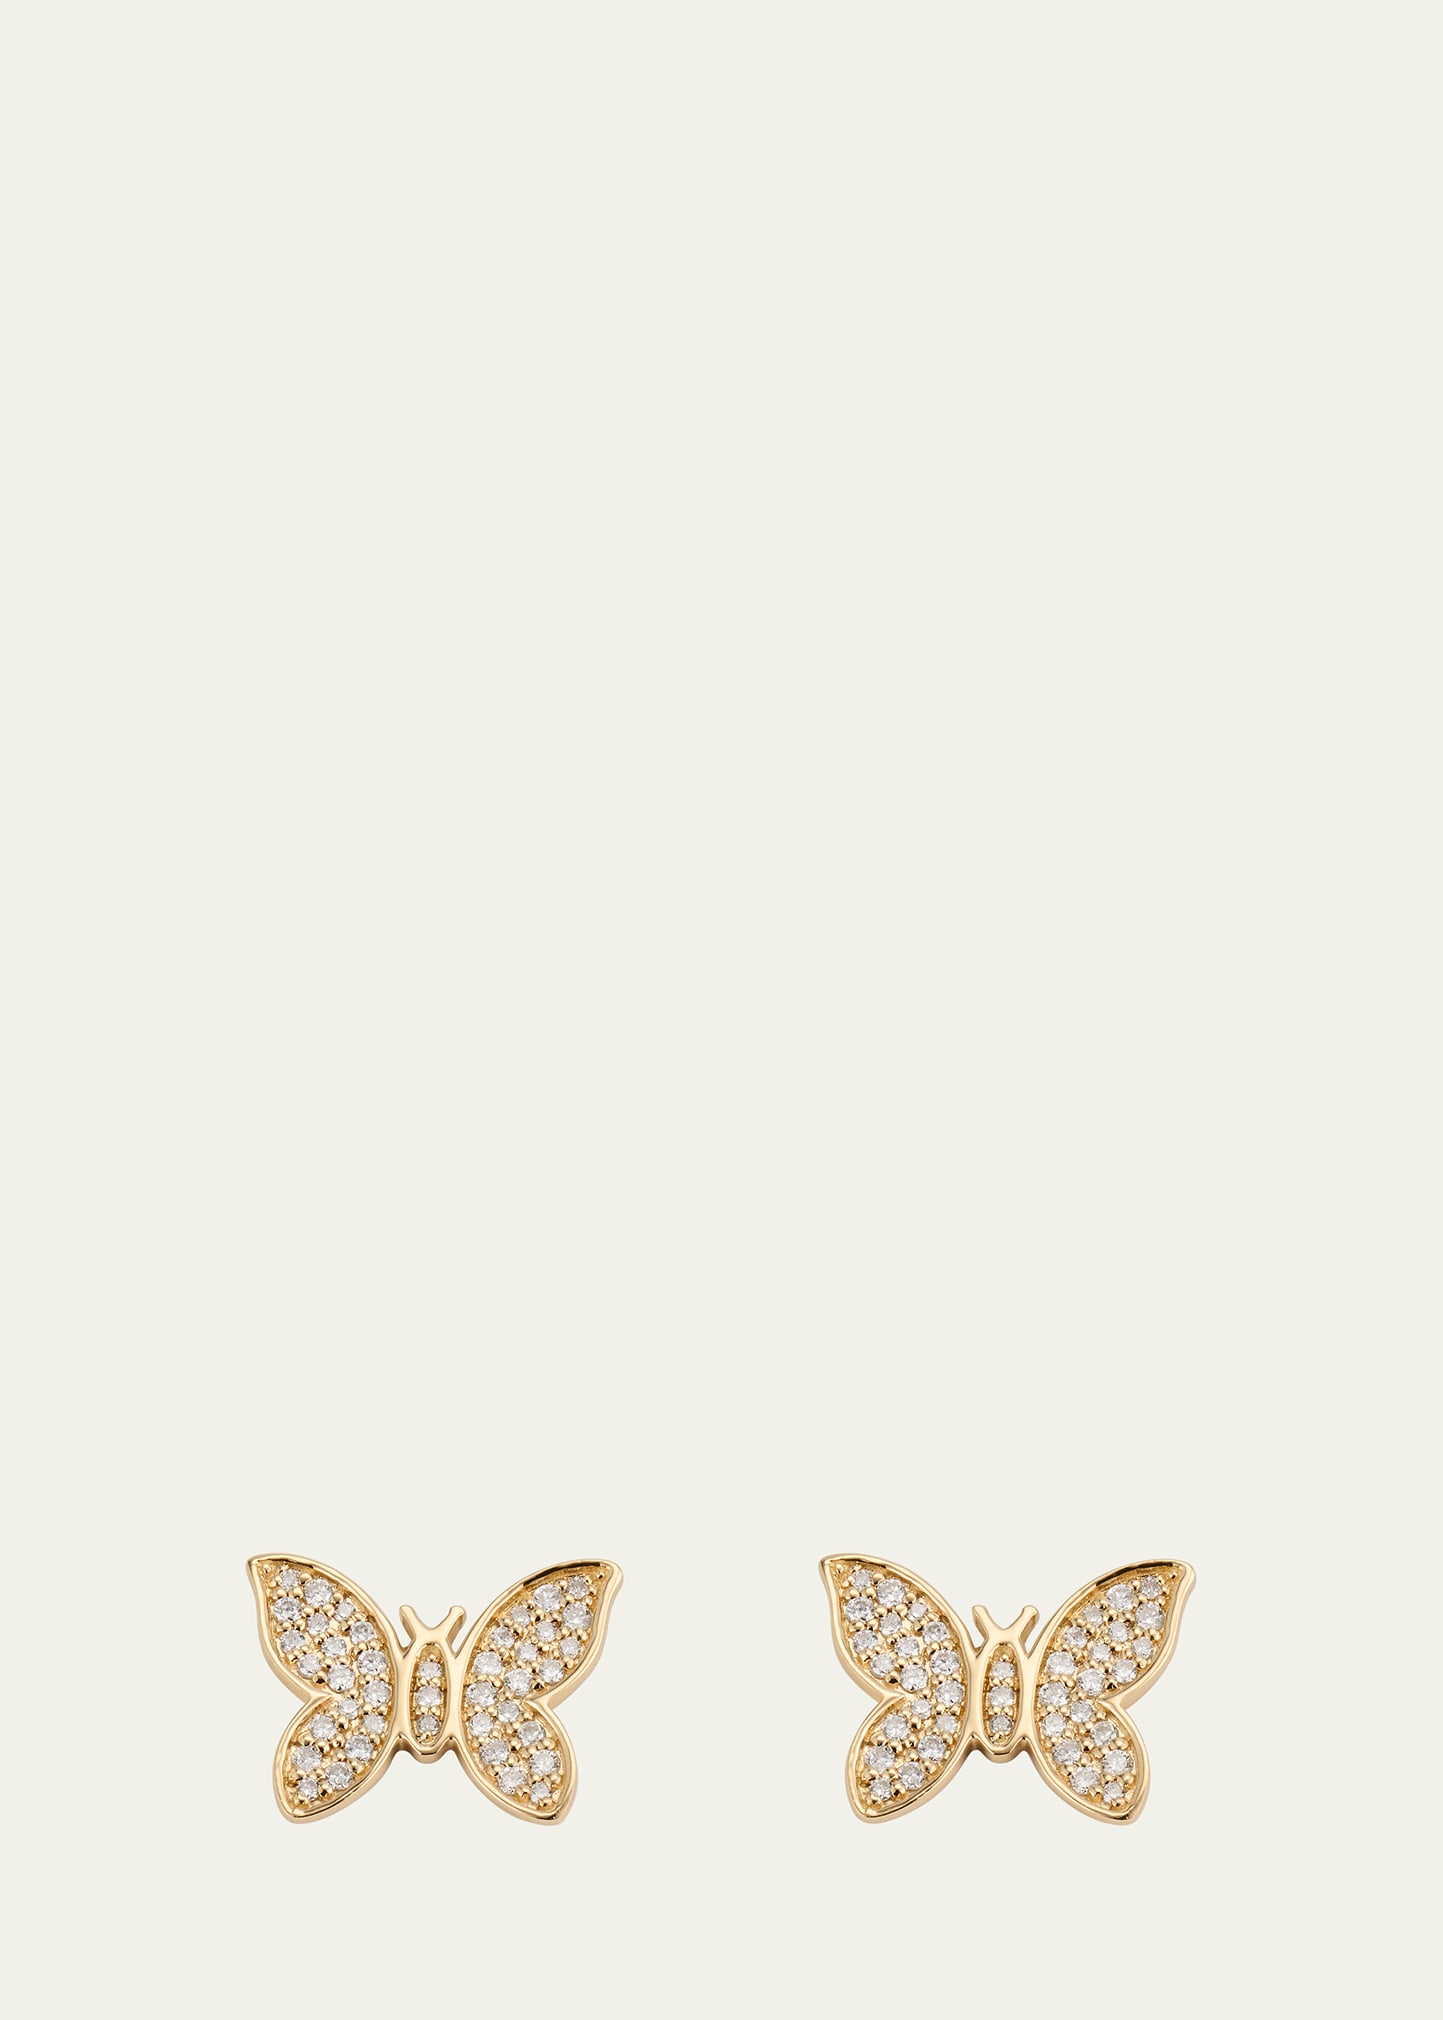 Sydney Evan 14k Gold Diamond Pave Butterfly Stud Earrings In Yg